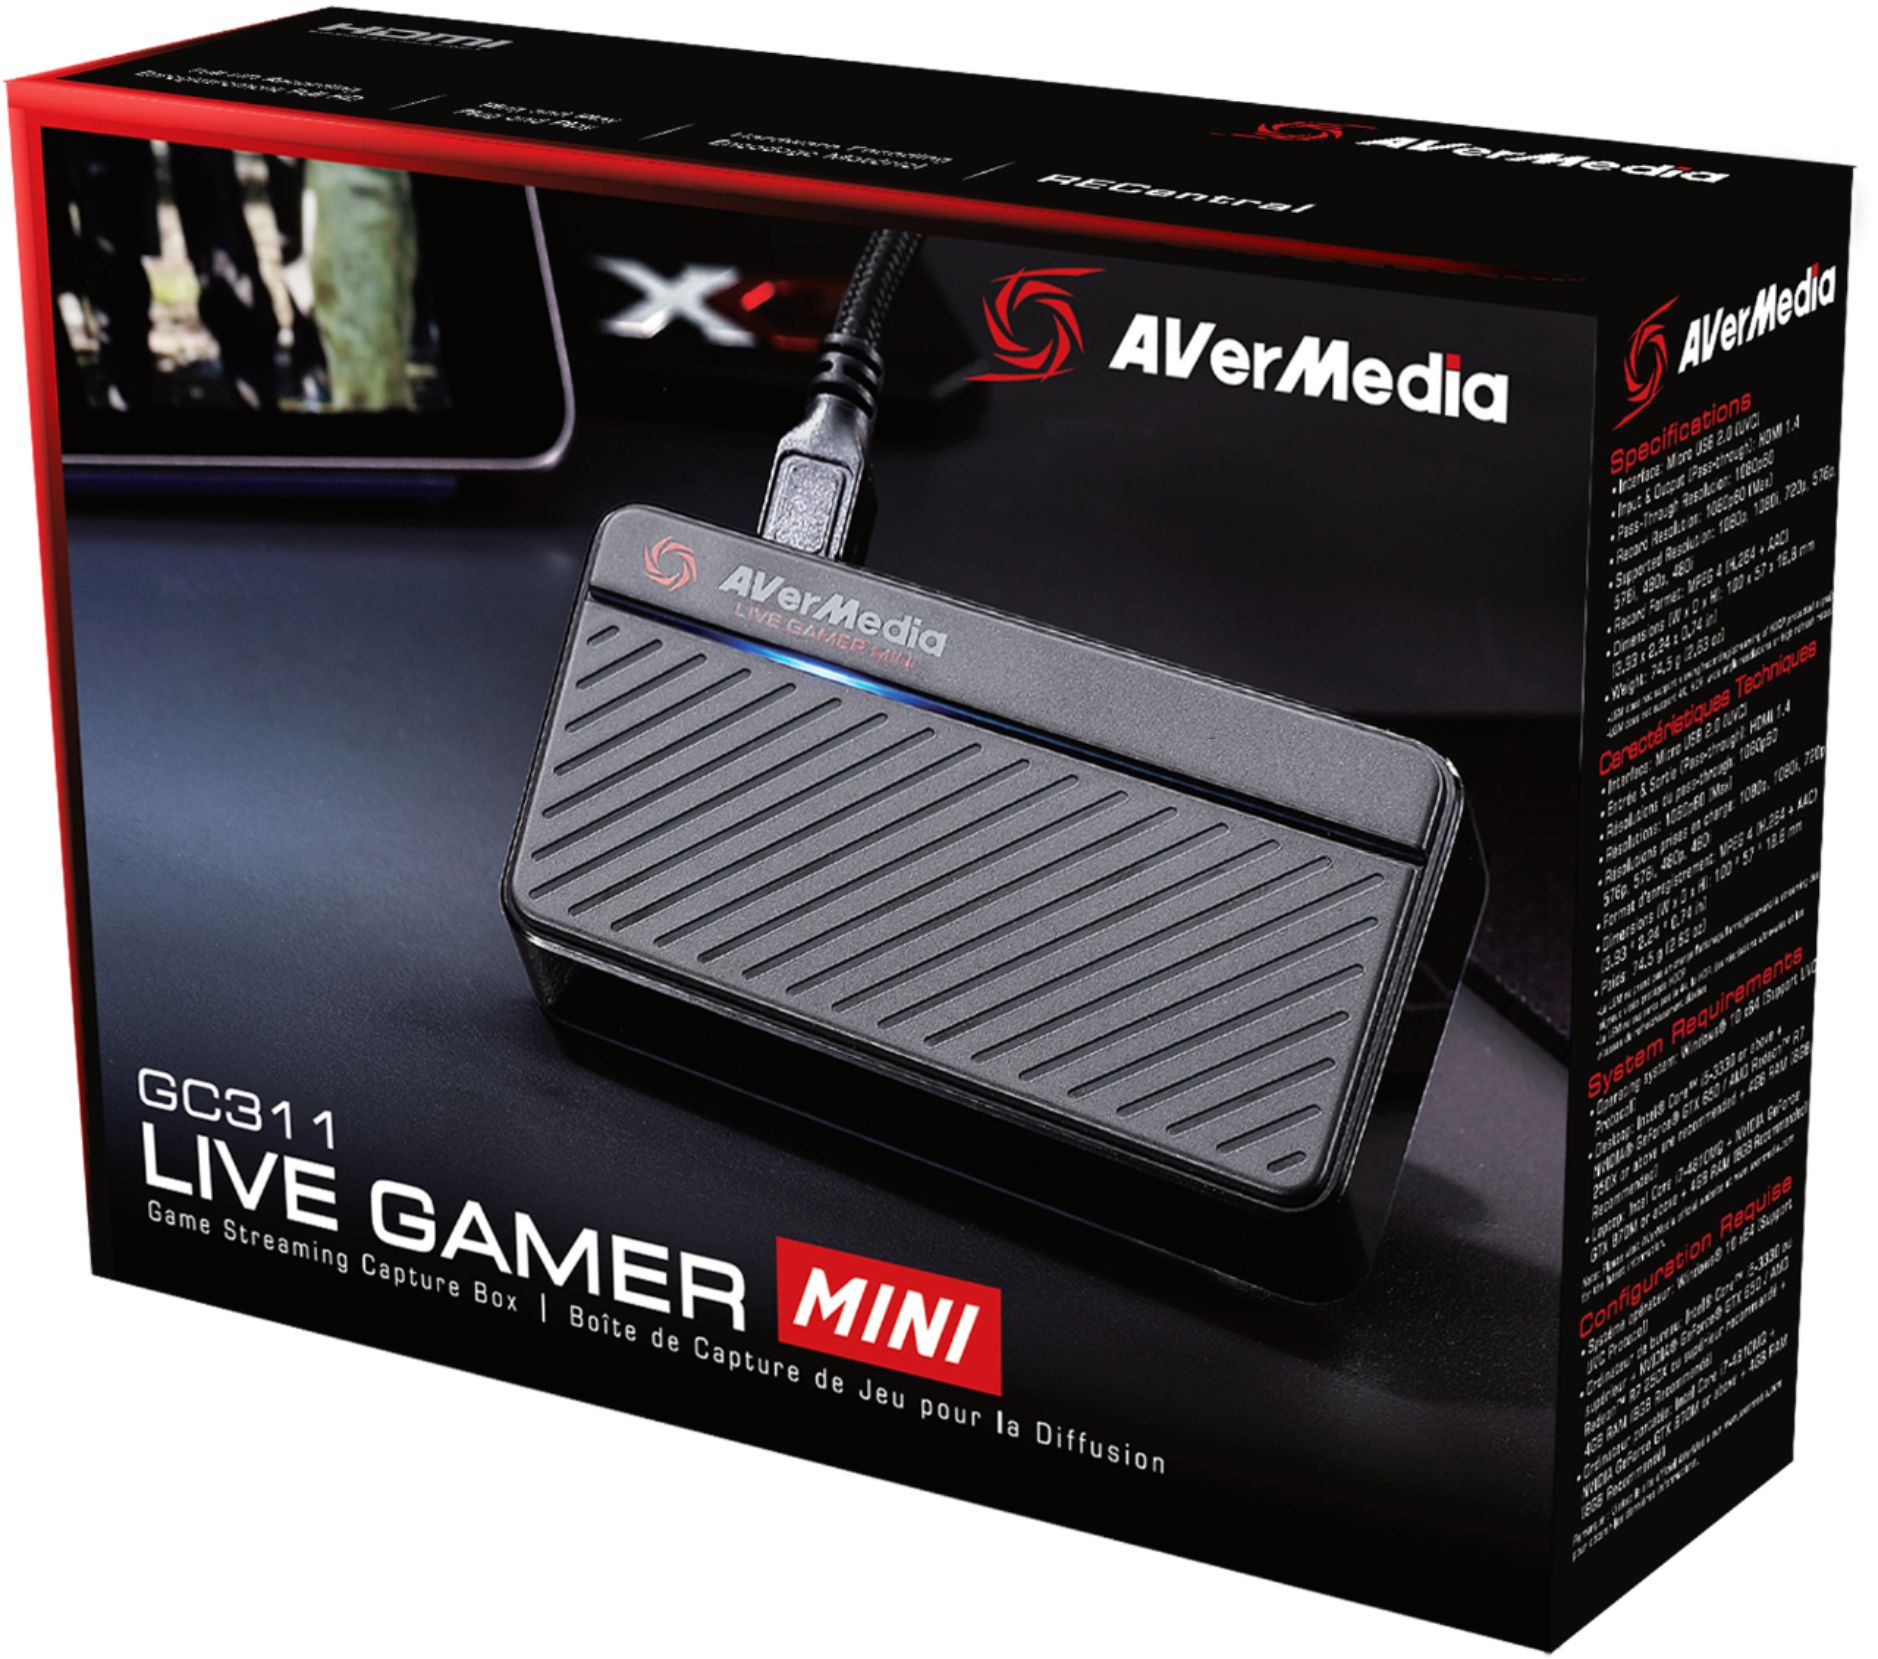 AVerMedia Live Gamer MINI GC311 - Best Buy